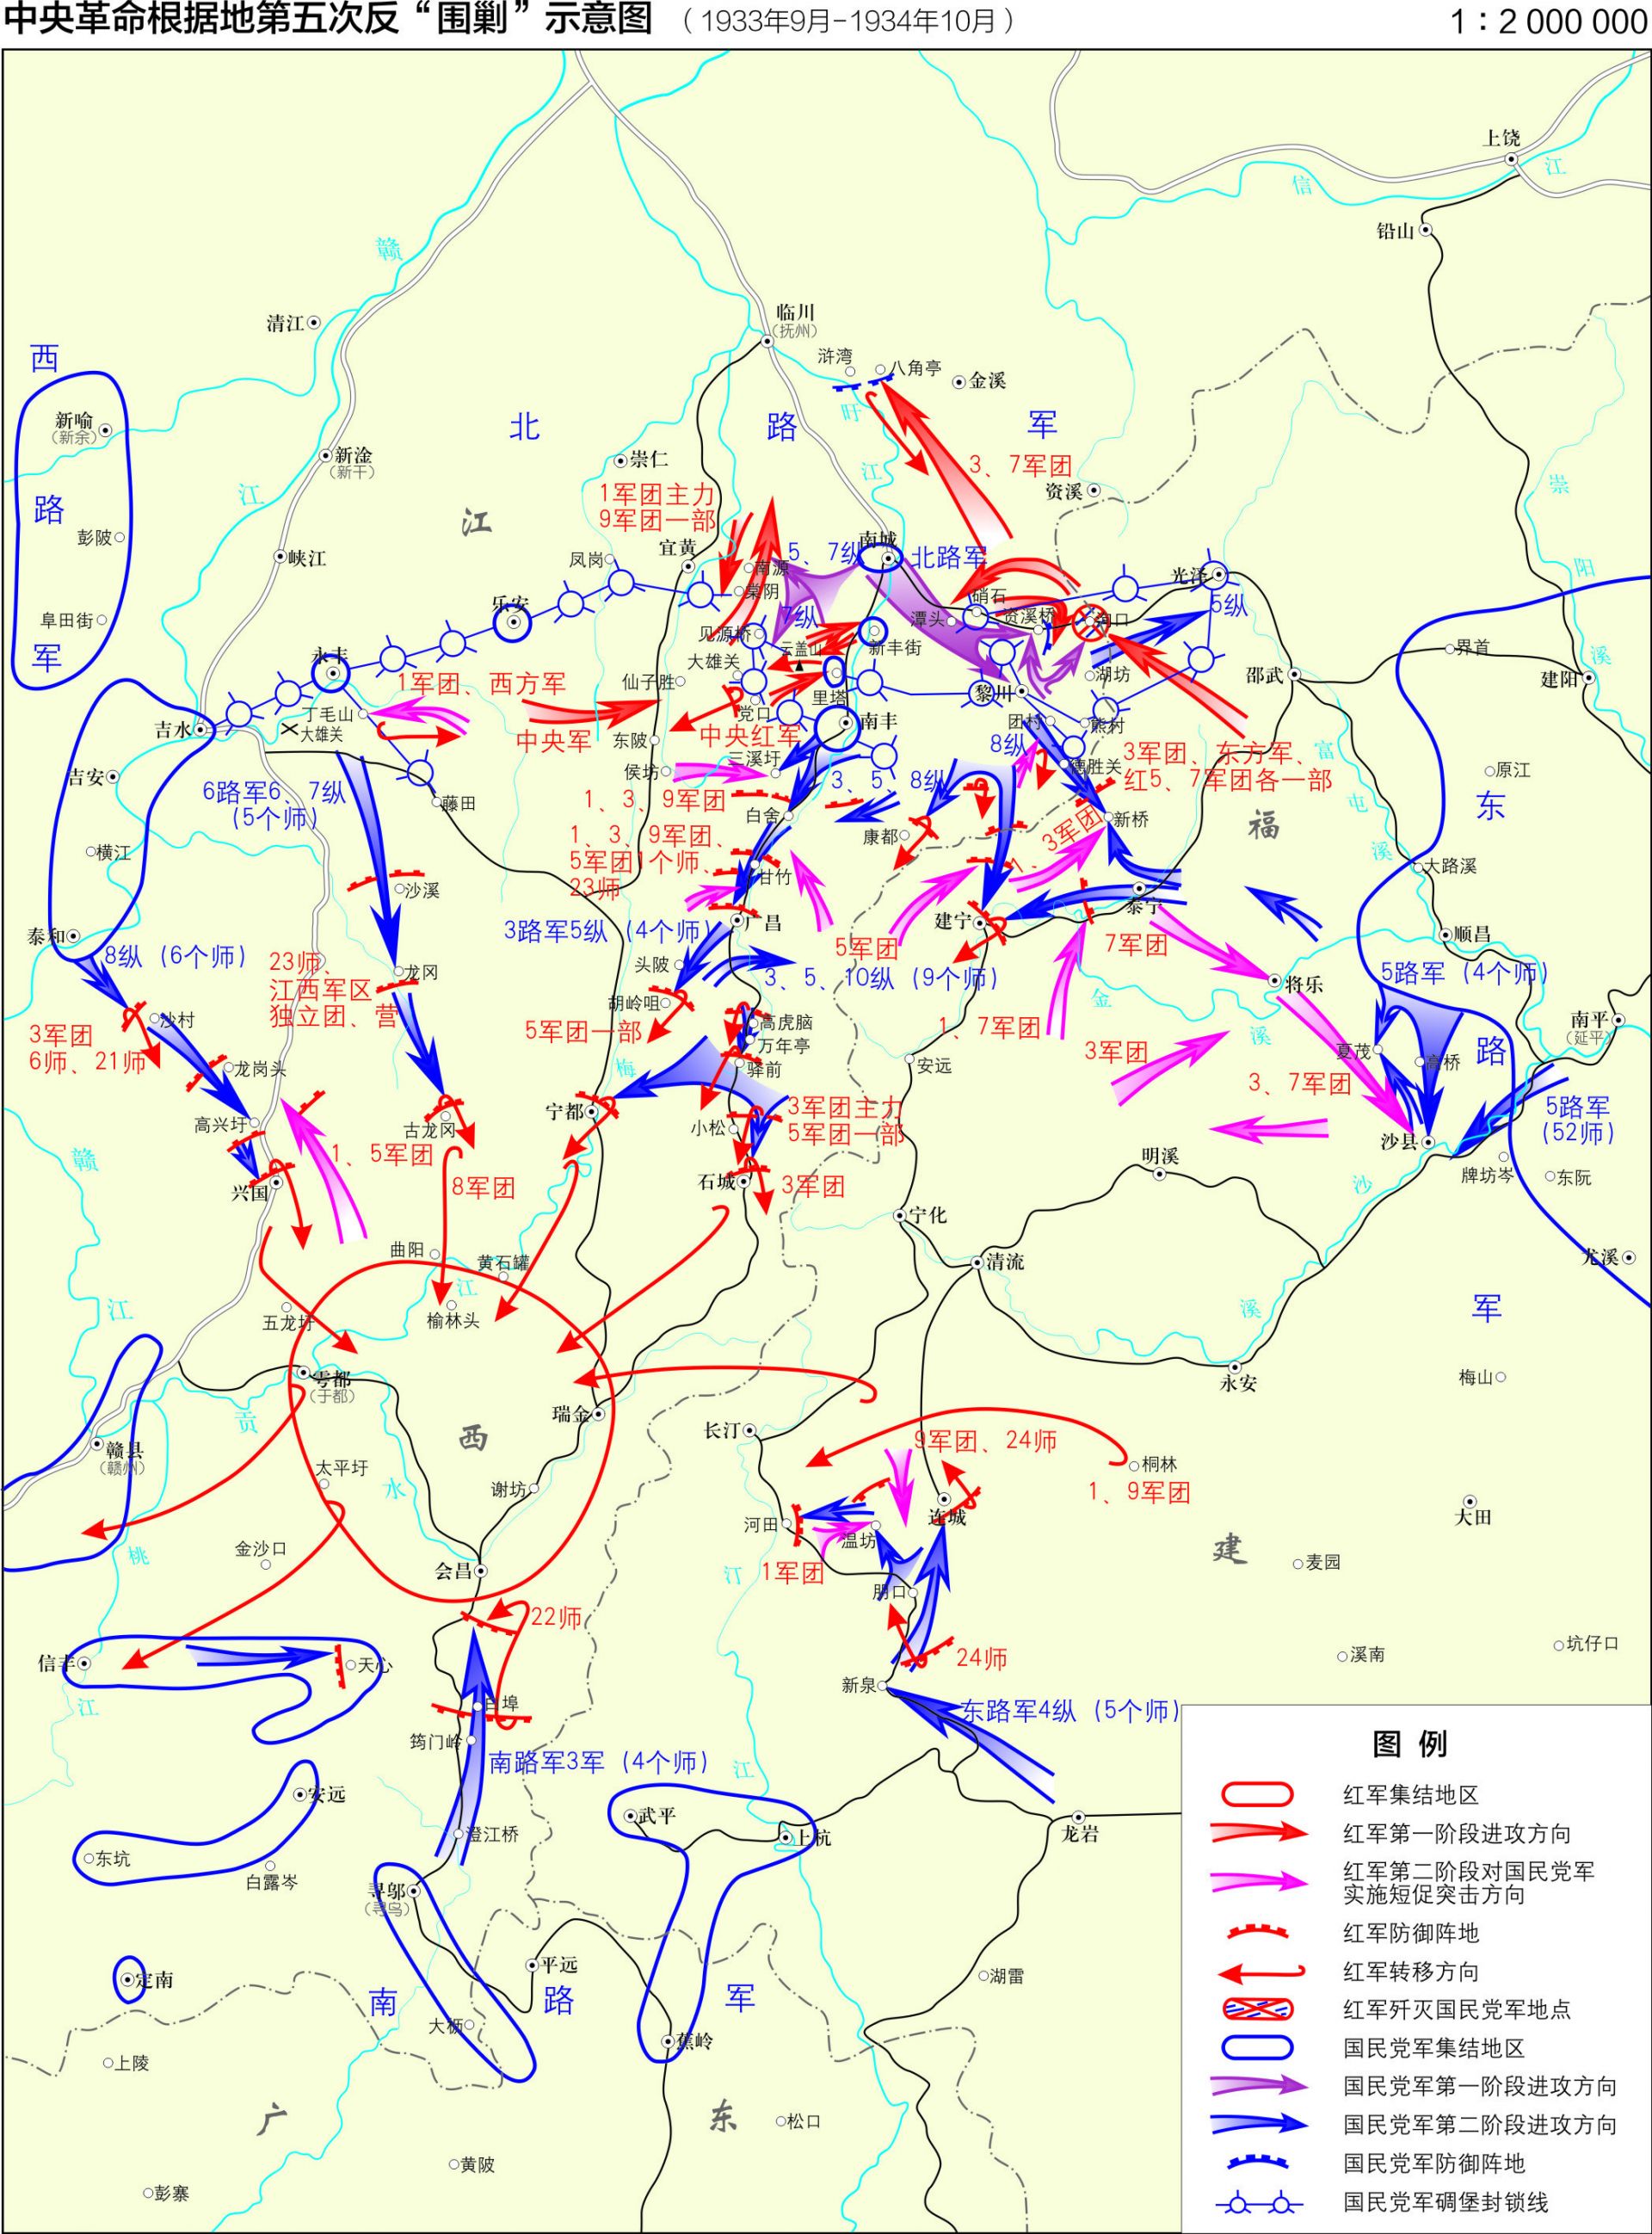 【每日红色地图】中央革命根据地第五次反围剿示意图